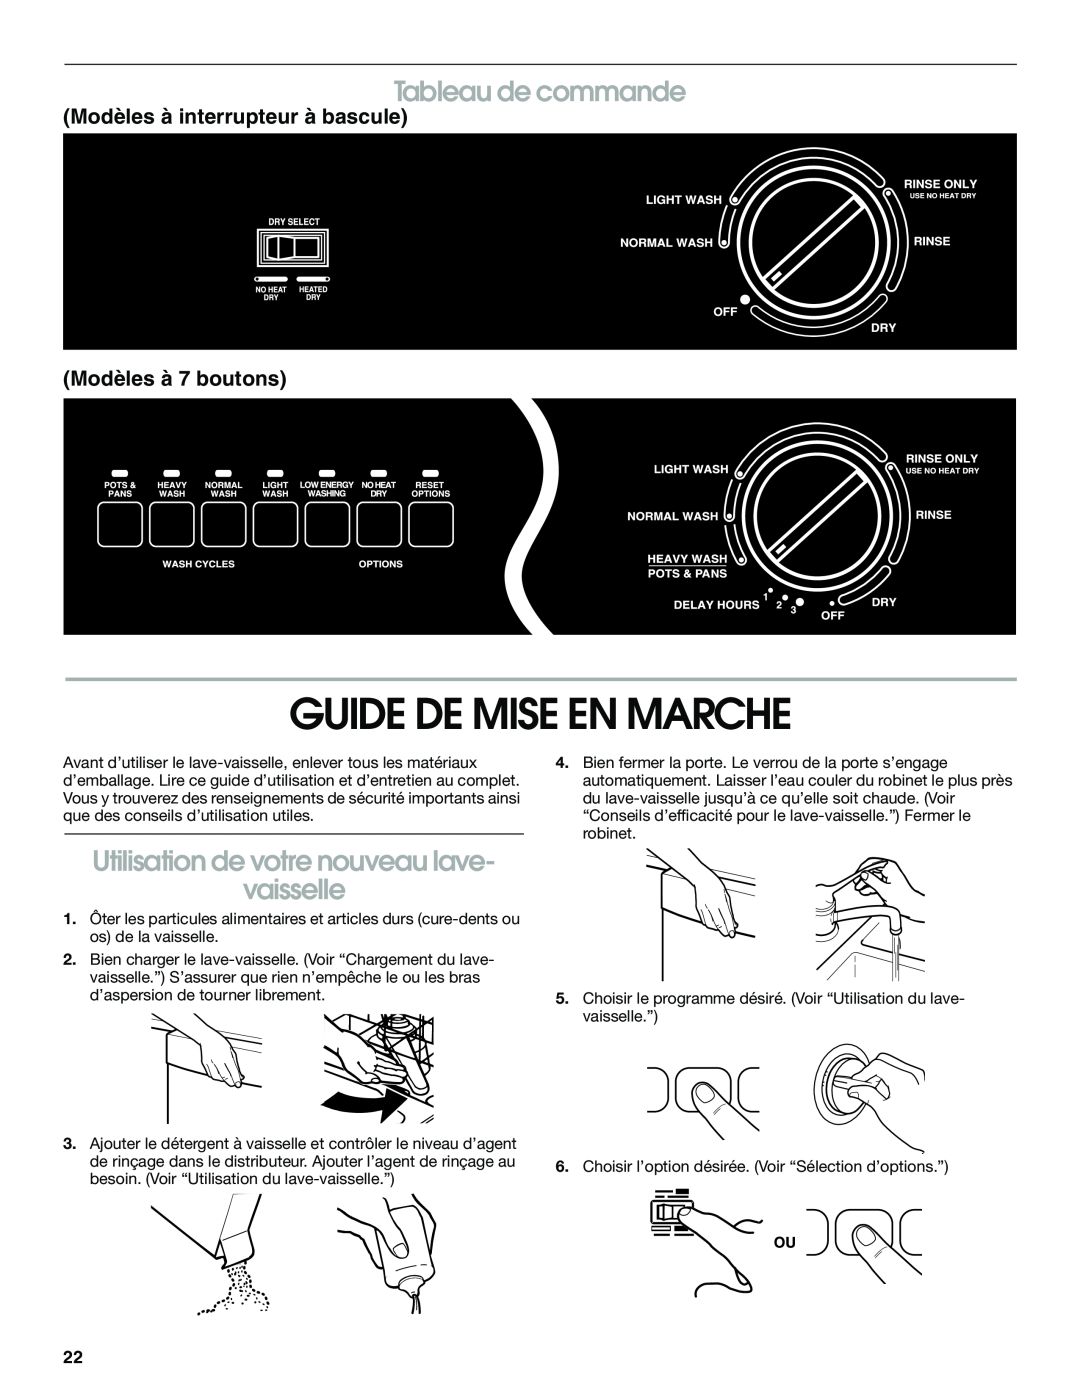 Whirlpool UNDERCOUNTER, TUD5700 Guide De Mise En Marche, Tableau de commande, Utilisation de votre nouveau lave vaisselle 